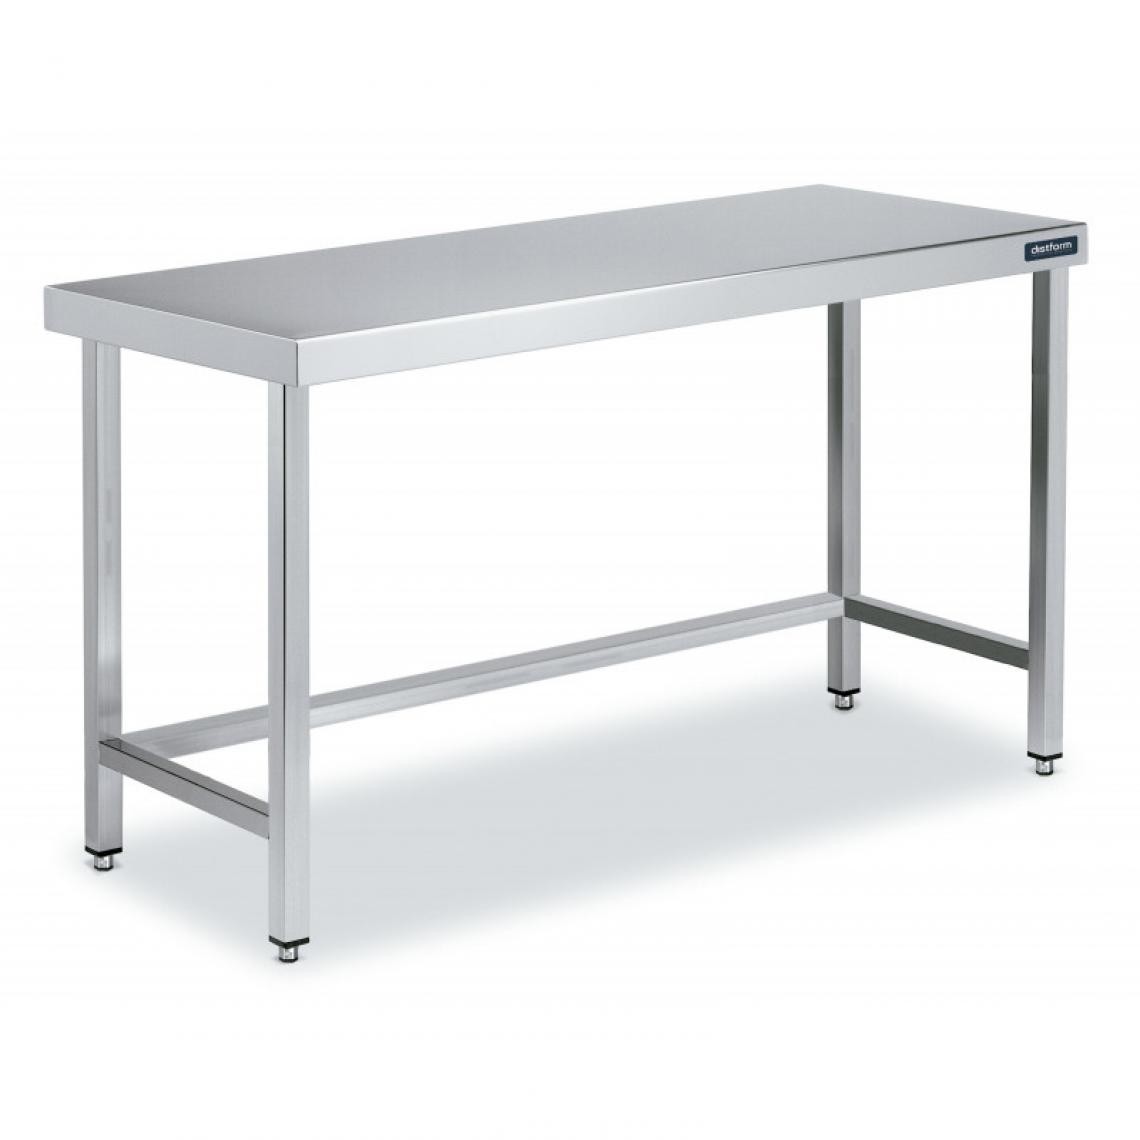 DISTFORM - Table Centrale en Inox avec renforts Profondeur 700 mm - Distform - Acier inoxydable2600x700 - Tables à manger